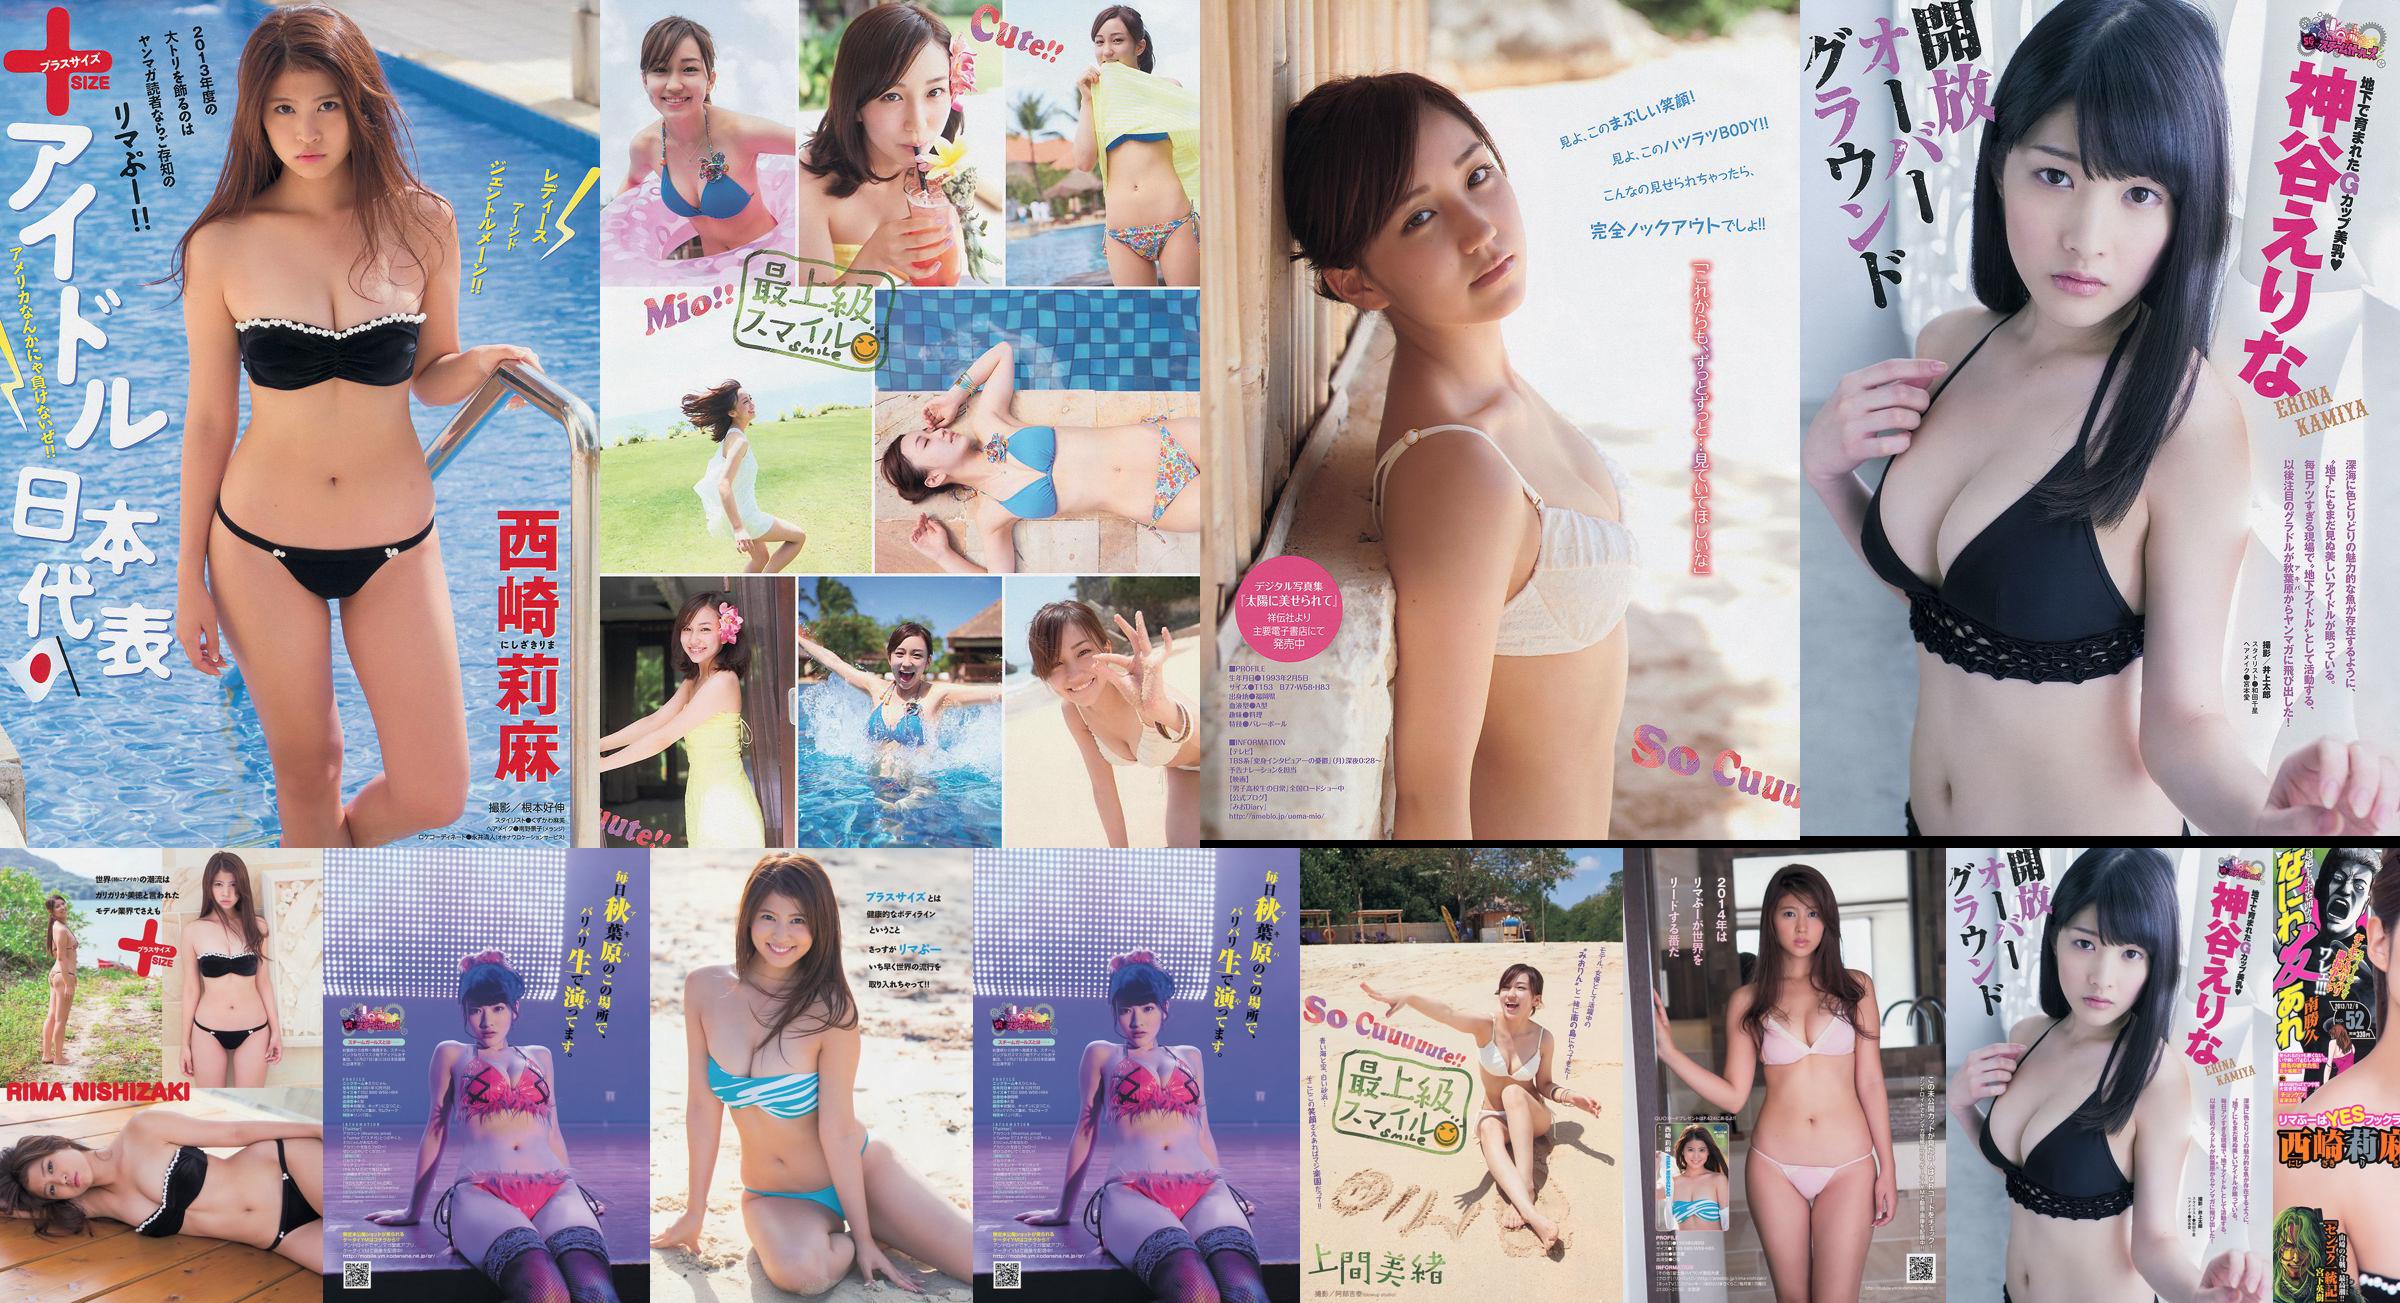 [Young Magazine] Rima Nishizaki Mio Uema Erina Kamiya 2013 No.52 Photo Moshi No.098474 Page 1